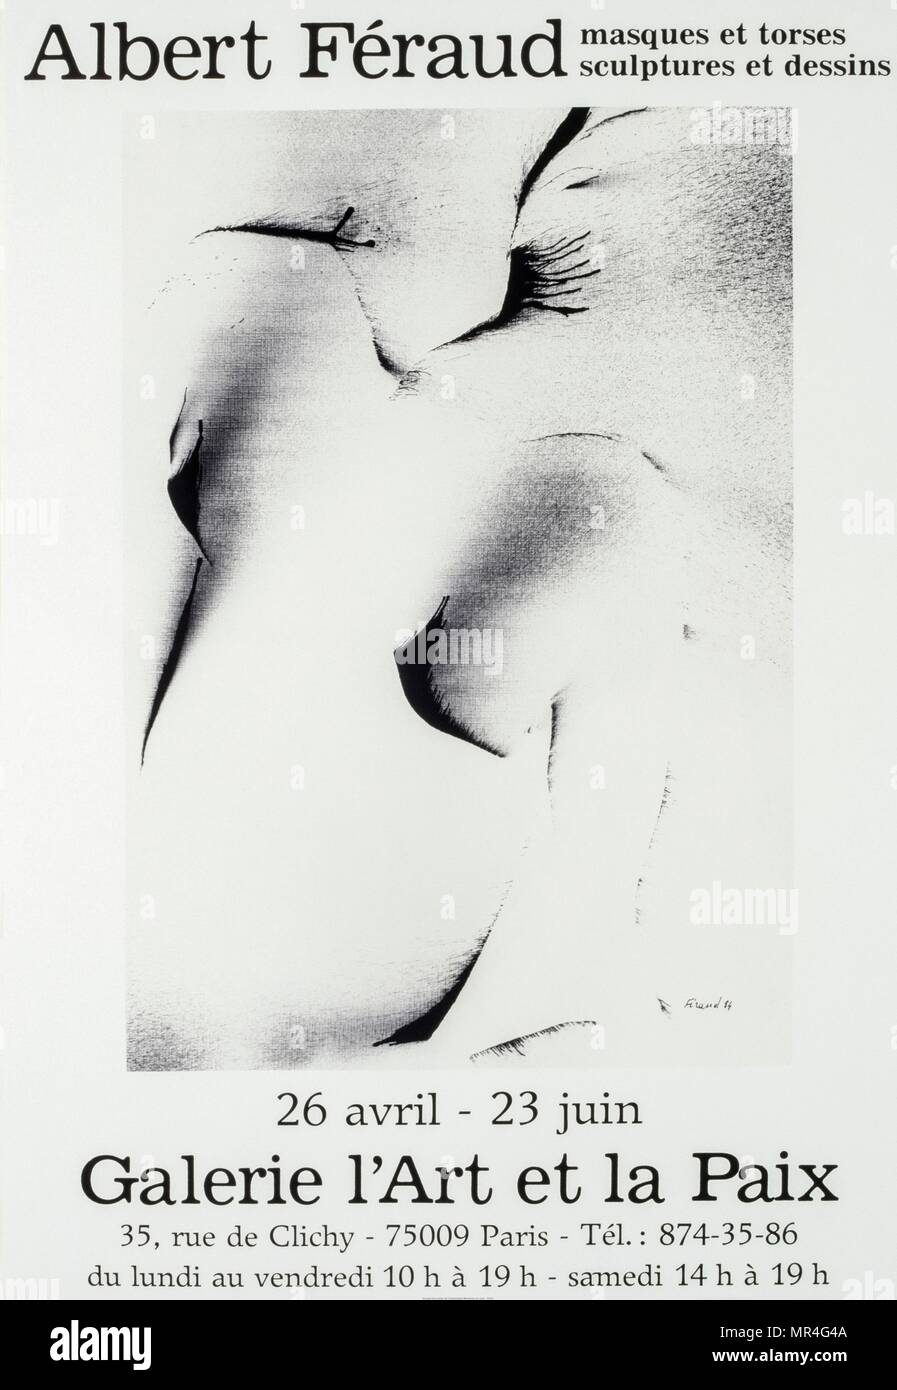 Affiche pour une exposition de Paris 1984 par Albert Féraud (1921 - 2008), sculpteur français Banque D'Images